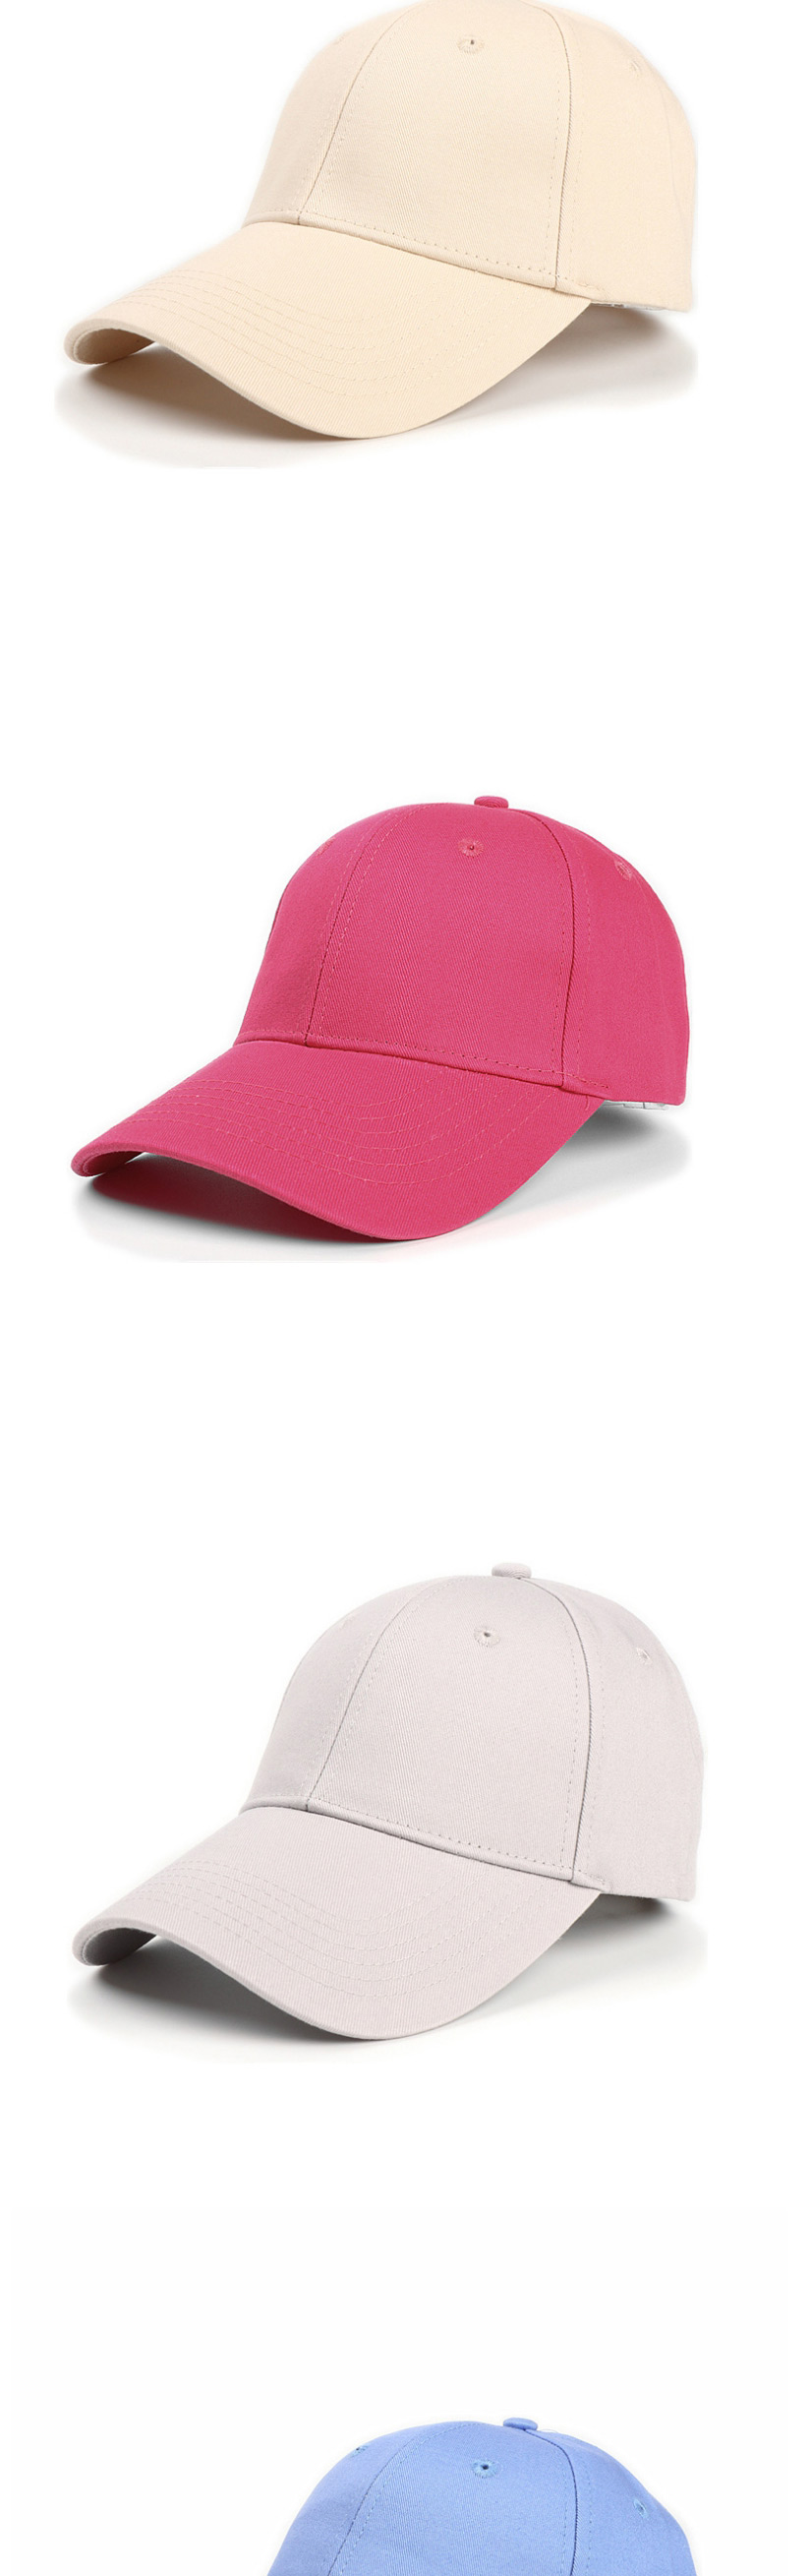 Fashion Rose Red Cotton Hard Top And Long Brim Baseball Cap,Baseball Caps